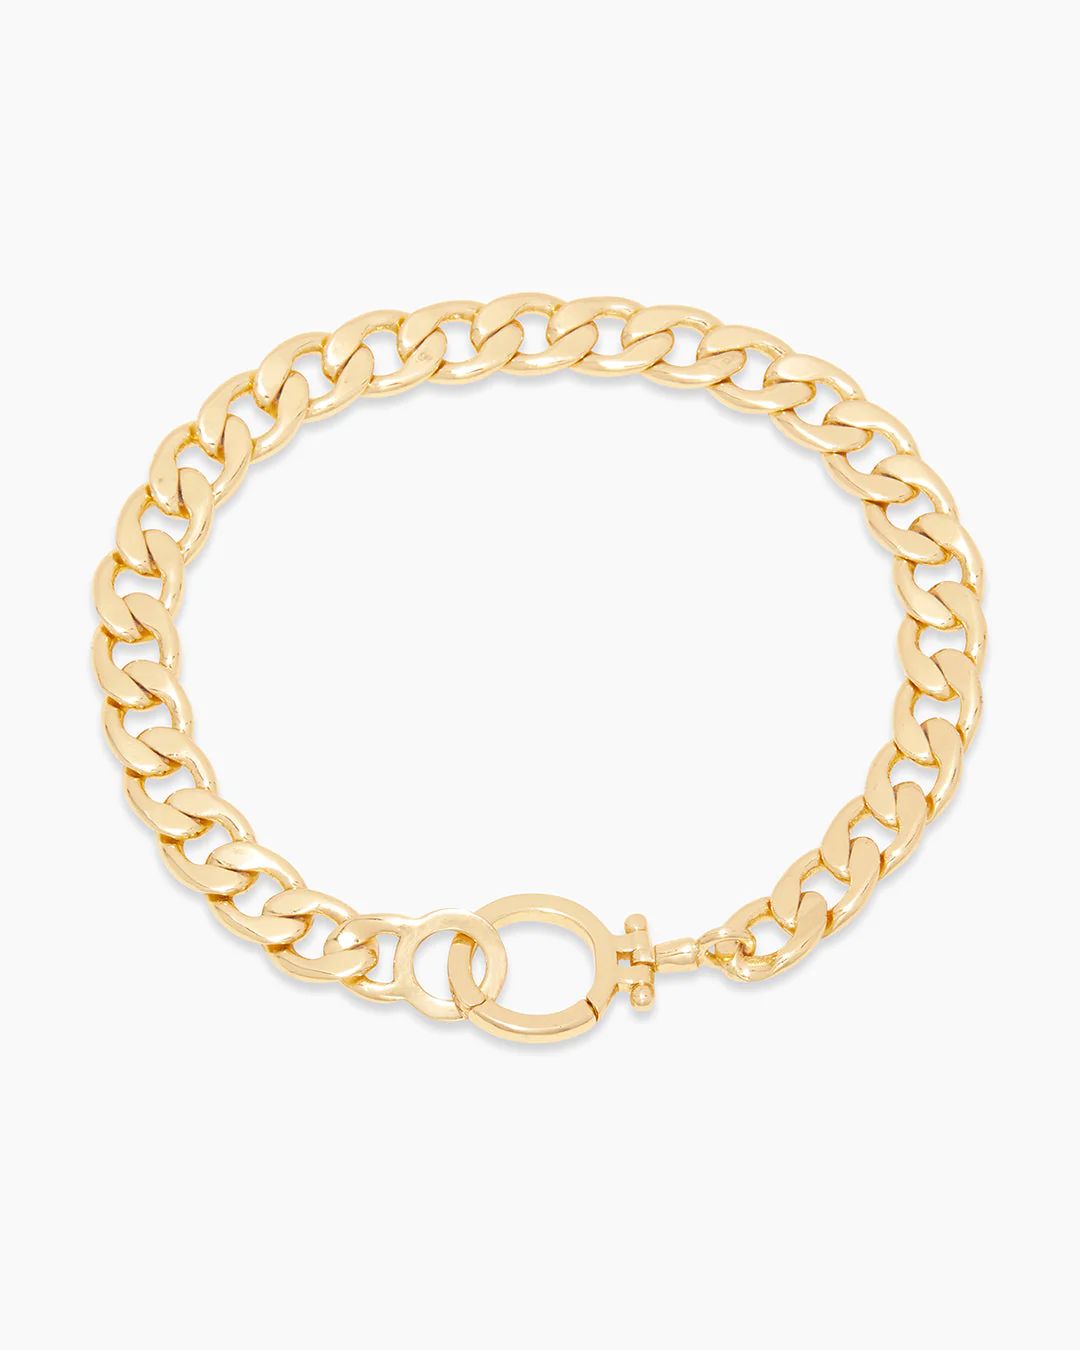 Wilder Chain Bracelet | Gorjana